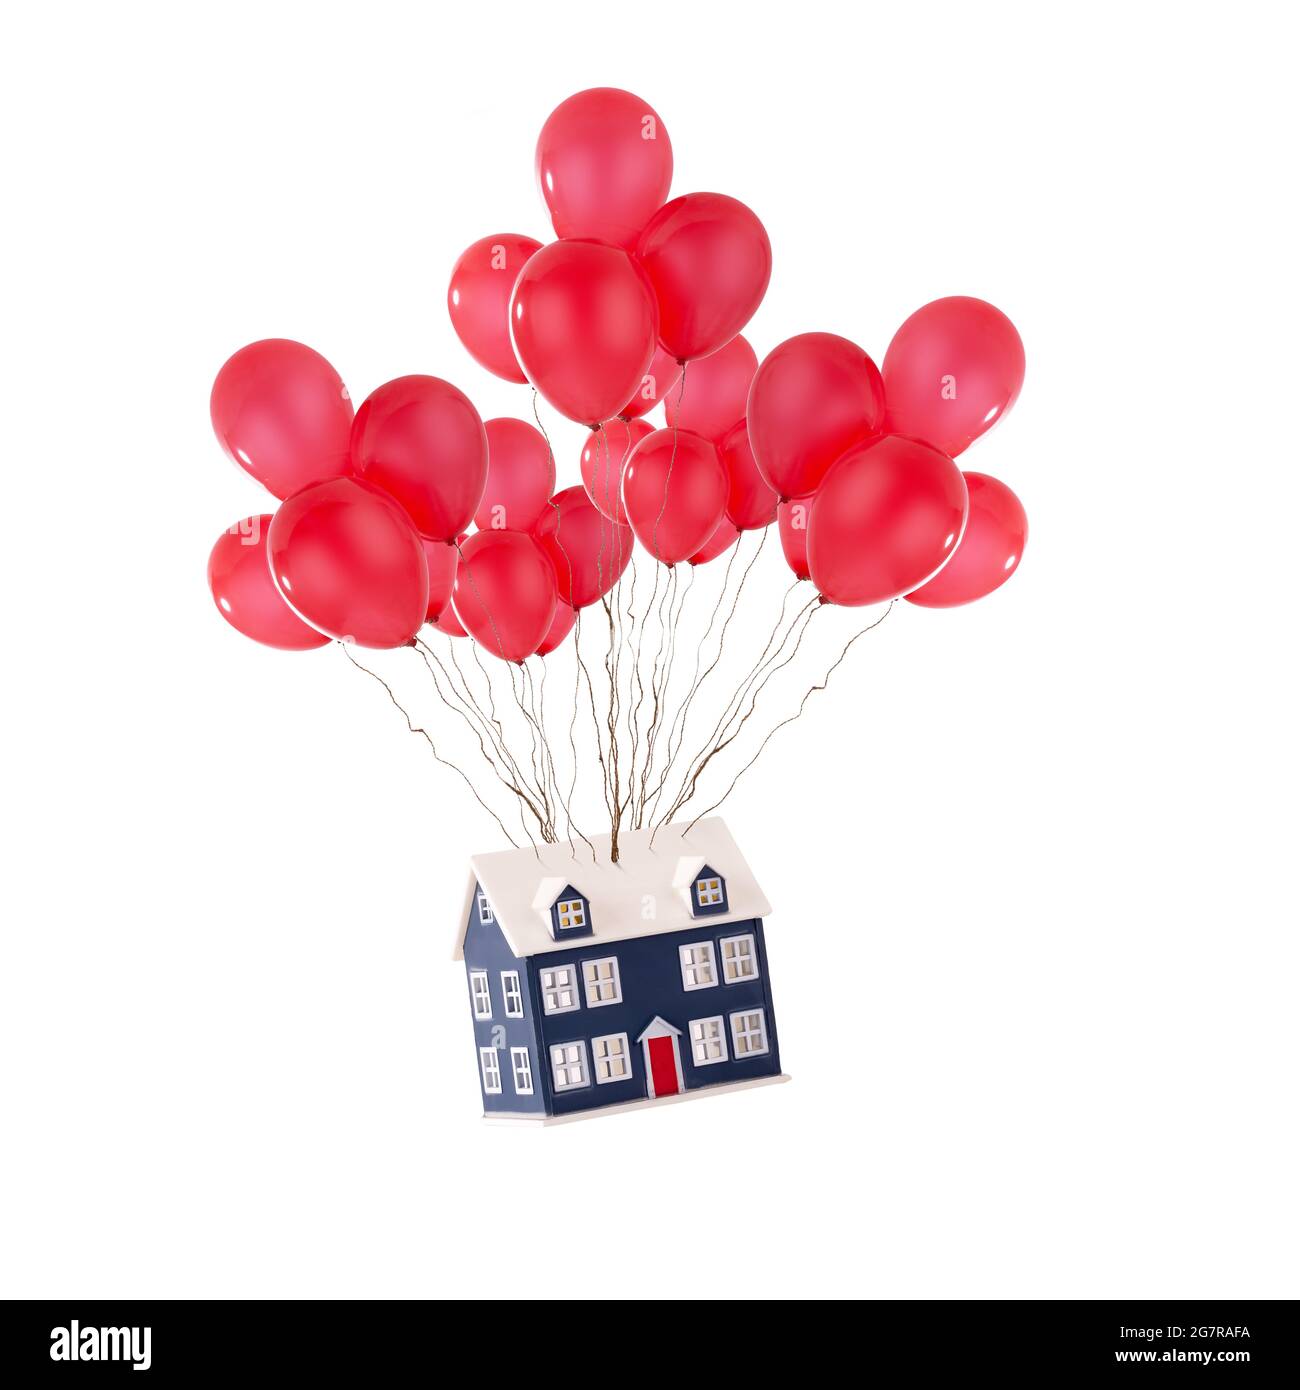 Maison de jouets flottant avec des ballons rouges isolés sur un fond blanc. Maison de déménagement et nouveau concept de maison pour les agents immobiliers Banque D'Images